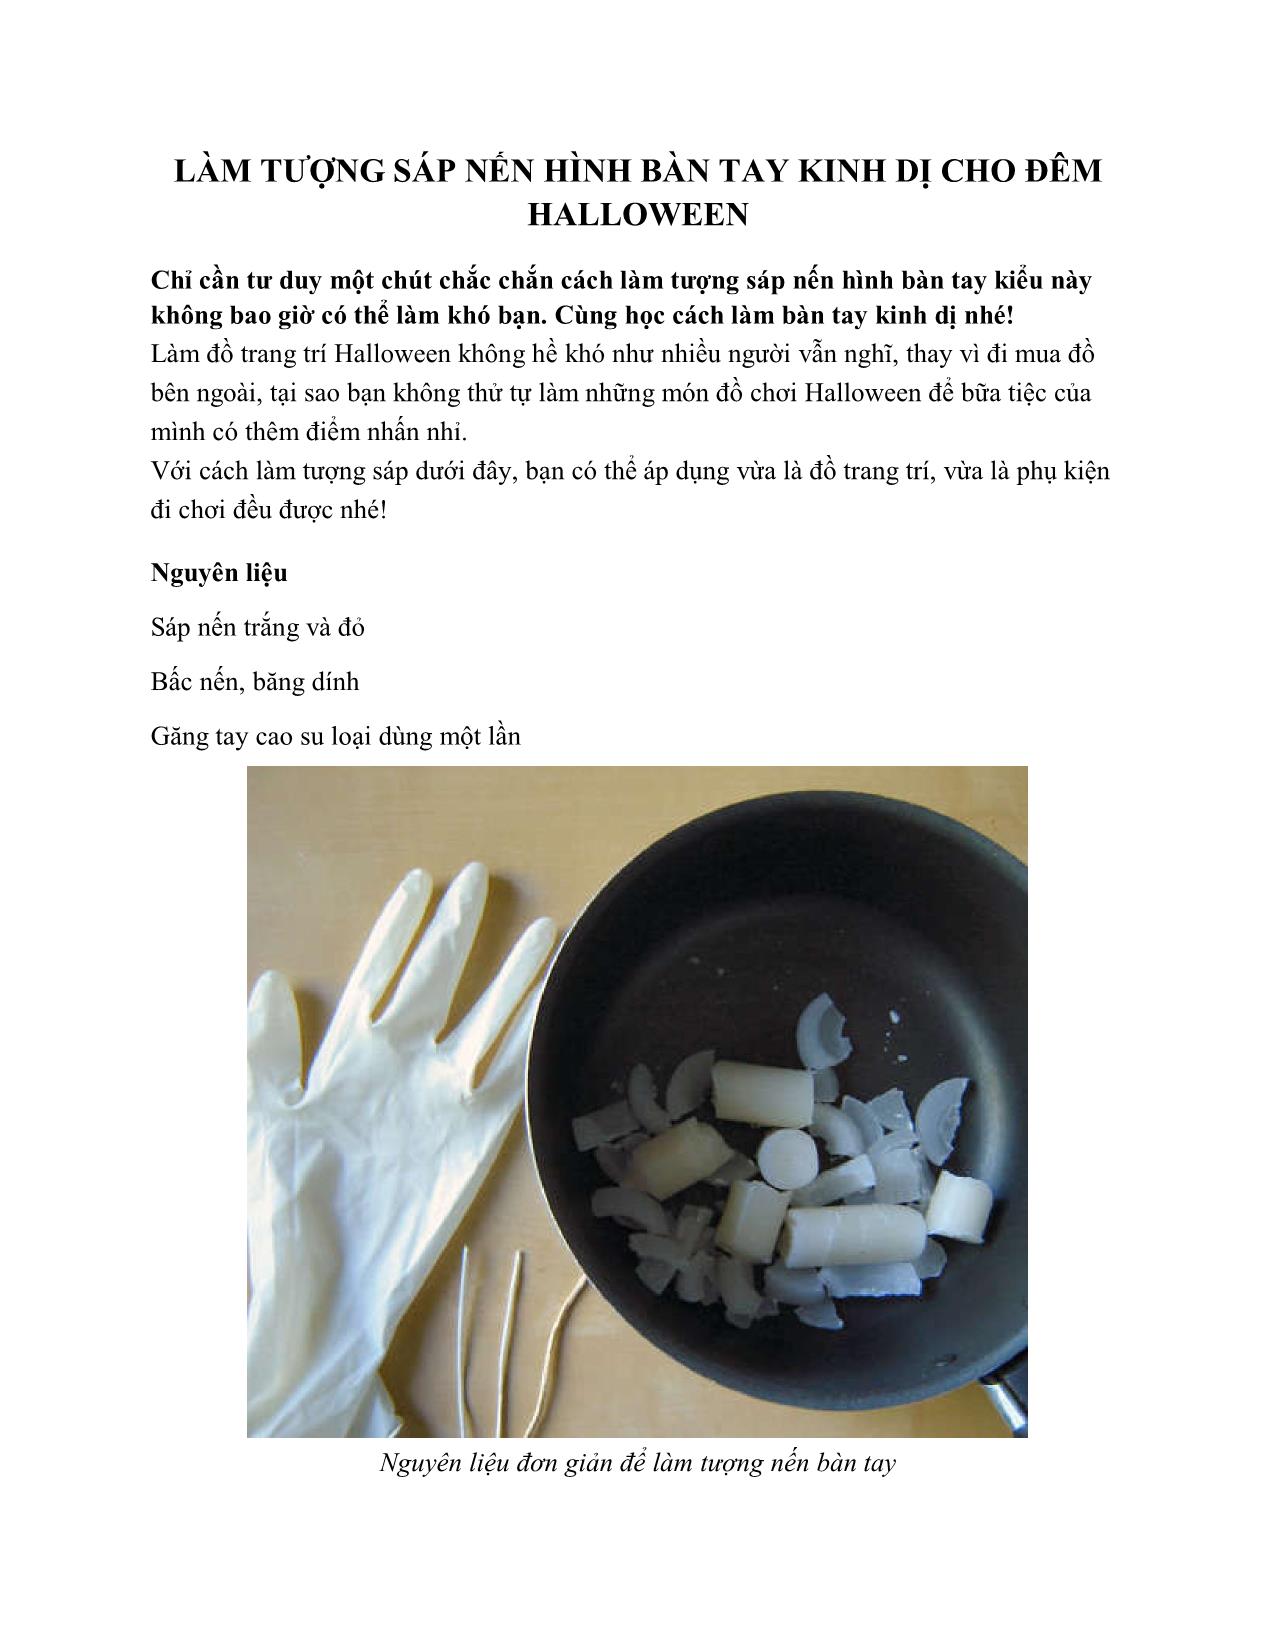 Làm tượng sáp nến hình bàn tay kinh dị cho đêm Halloween trang 1